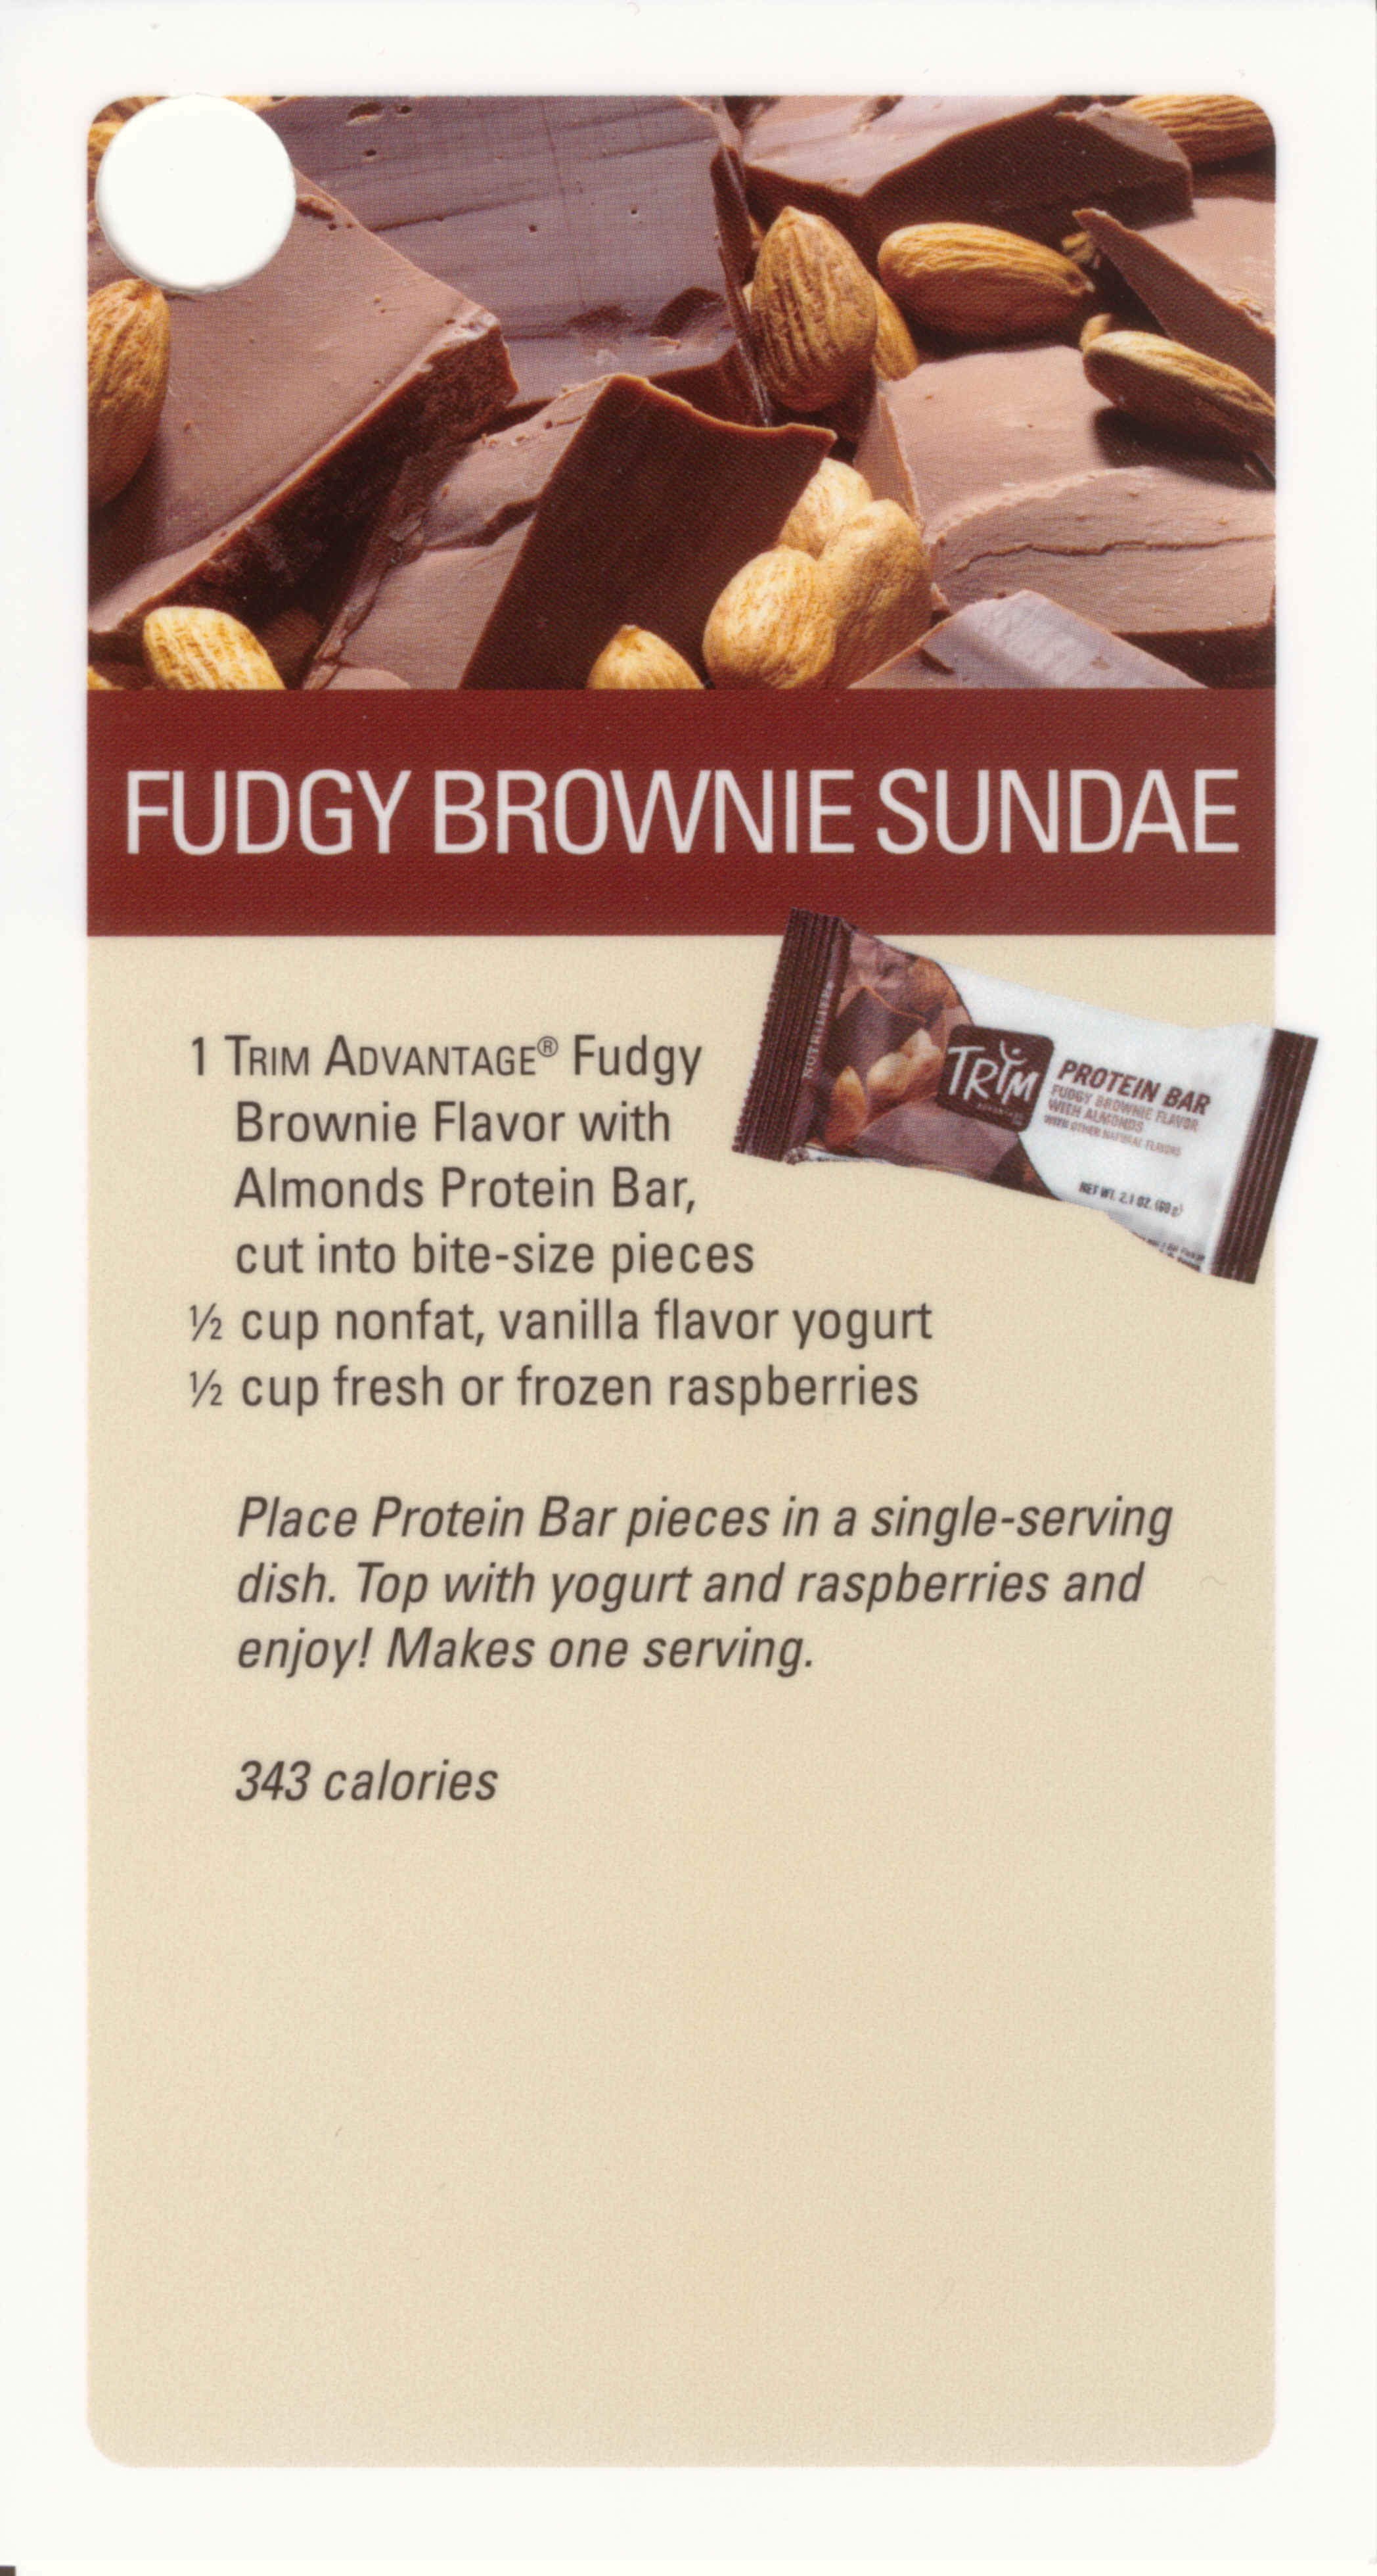 Fudgy Brownie Sundae.jpg (4675188 bytes)